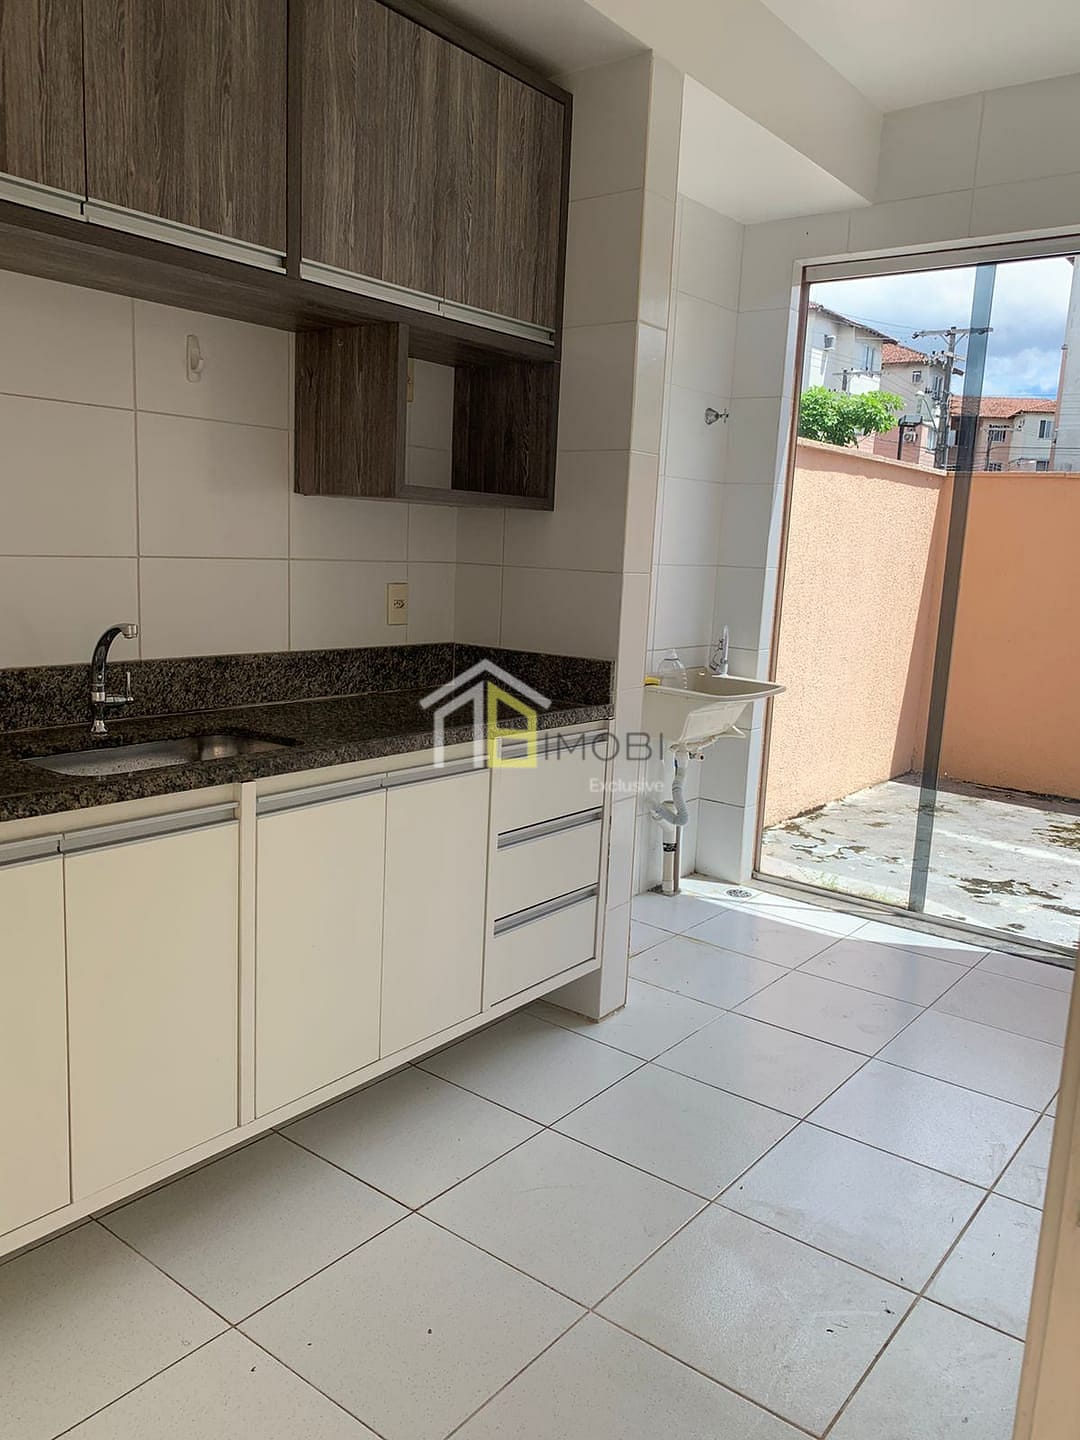 Apartamento em Colônia Terra Nova, Manaus/AM de 53m² 2 quartos à venda por R$ 279.000,00